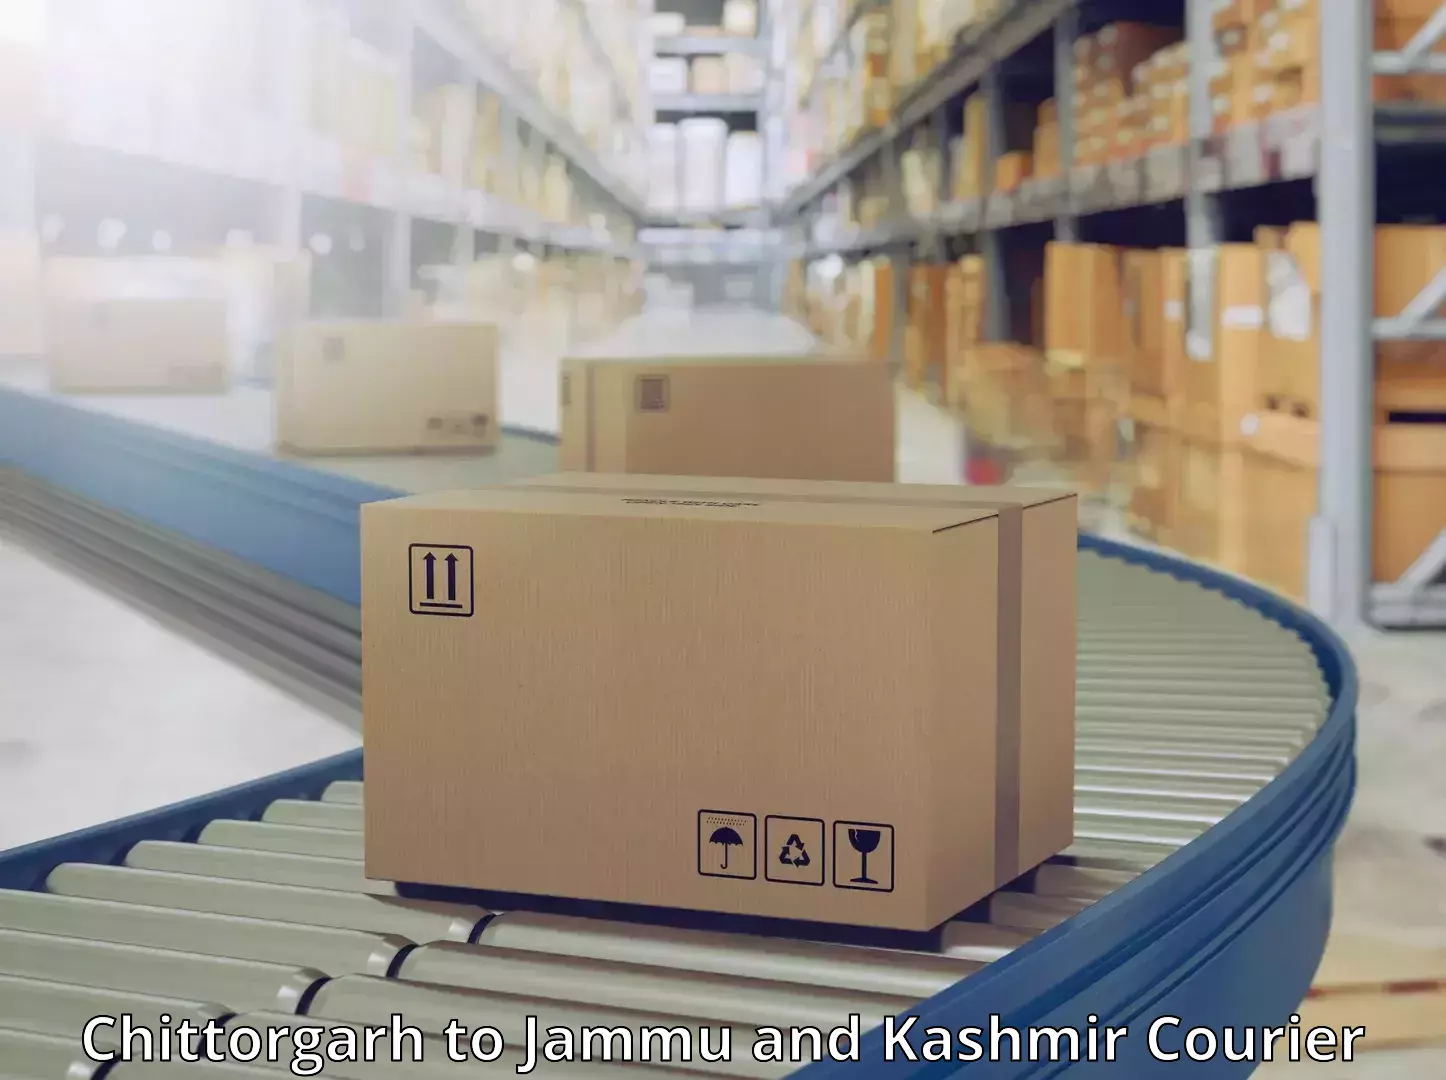 24-hour courier services Chittorgarh to Jammu